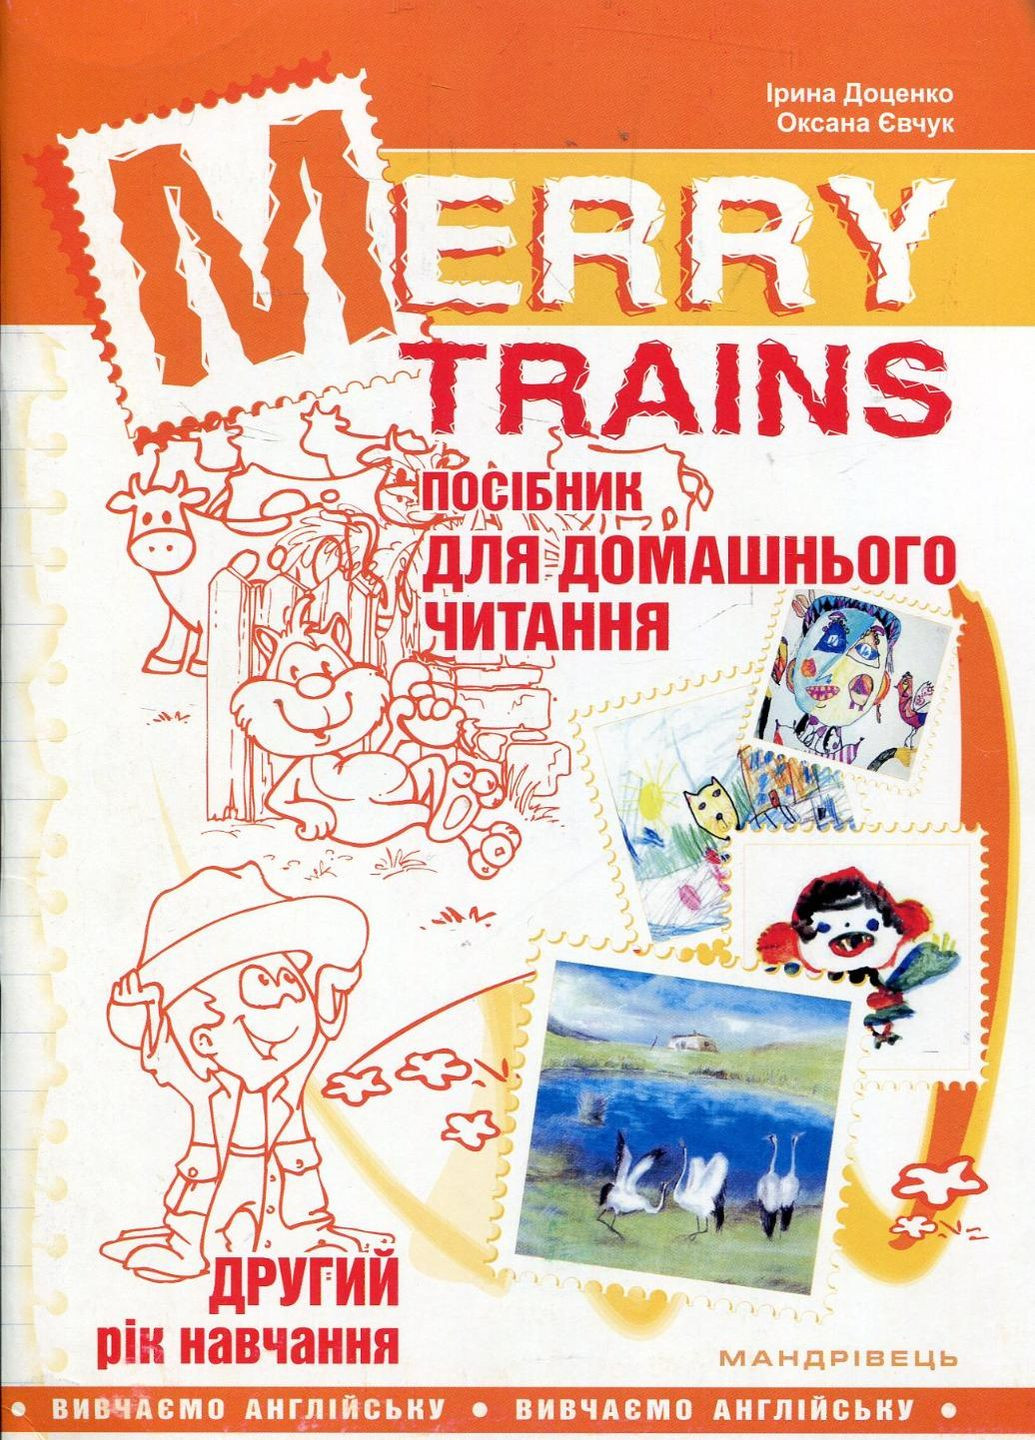 Merry Trains. Посібник для домашнього читання з англійської мови. Другий рік навчання 978-966-634-923-4 Мандрівець (282743609)